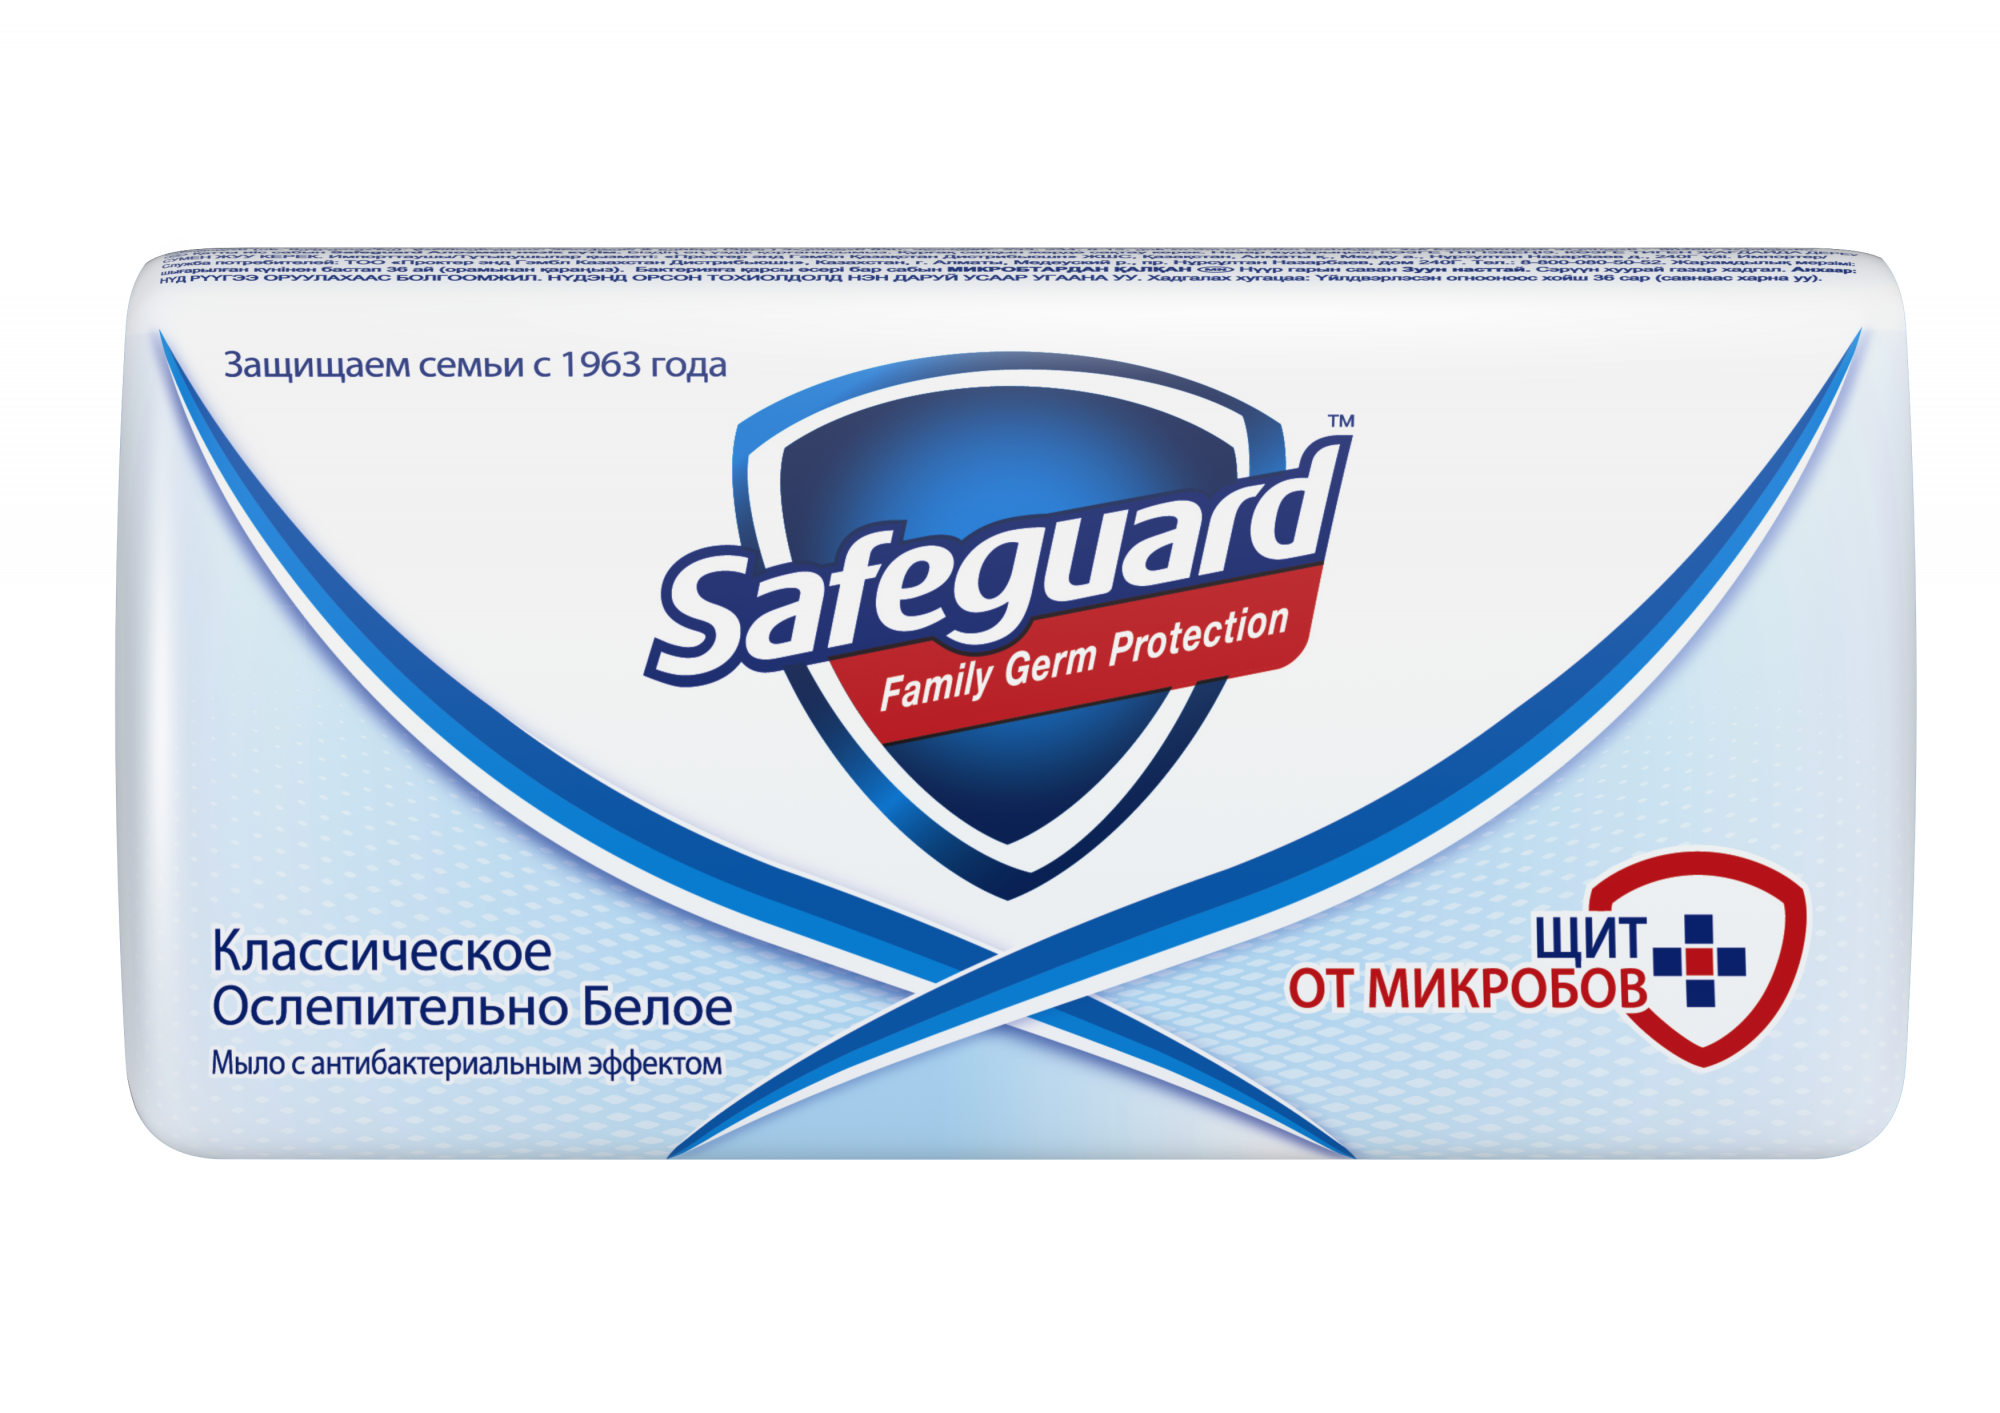 Мыло Safeguard, антибактериальное, классическое ослепительно белое 90 г.